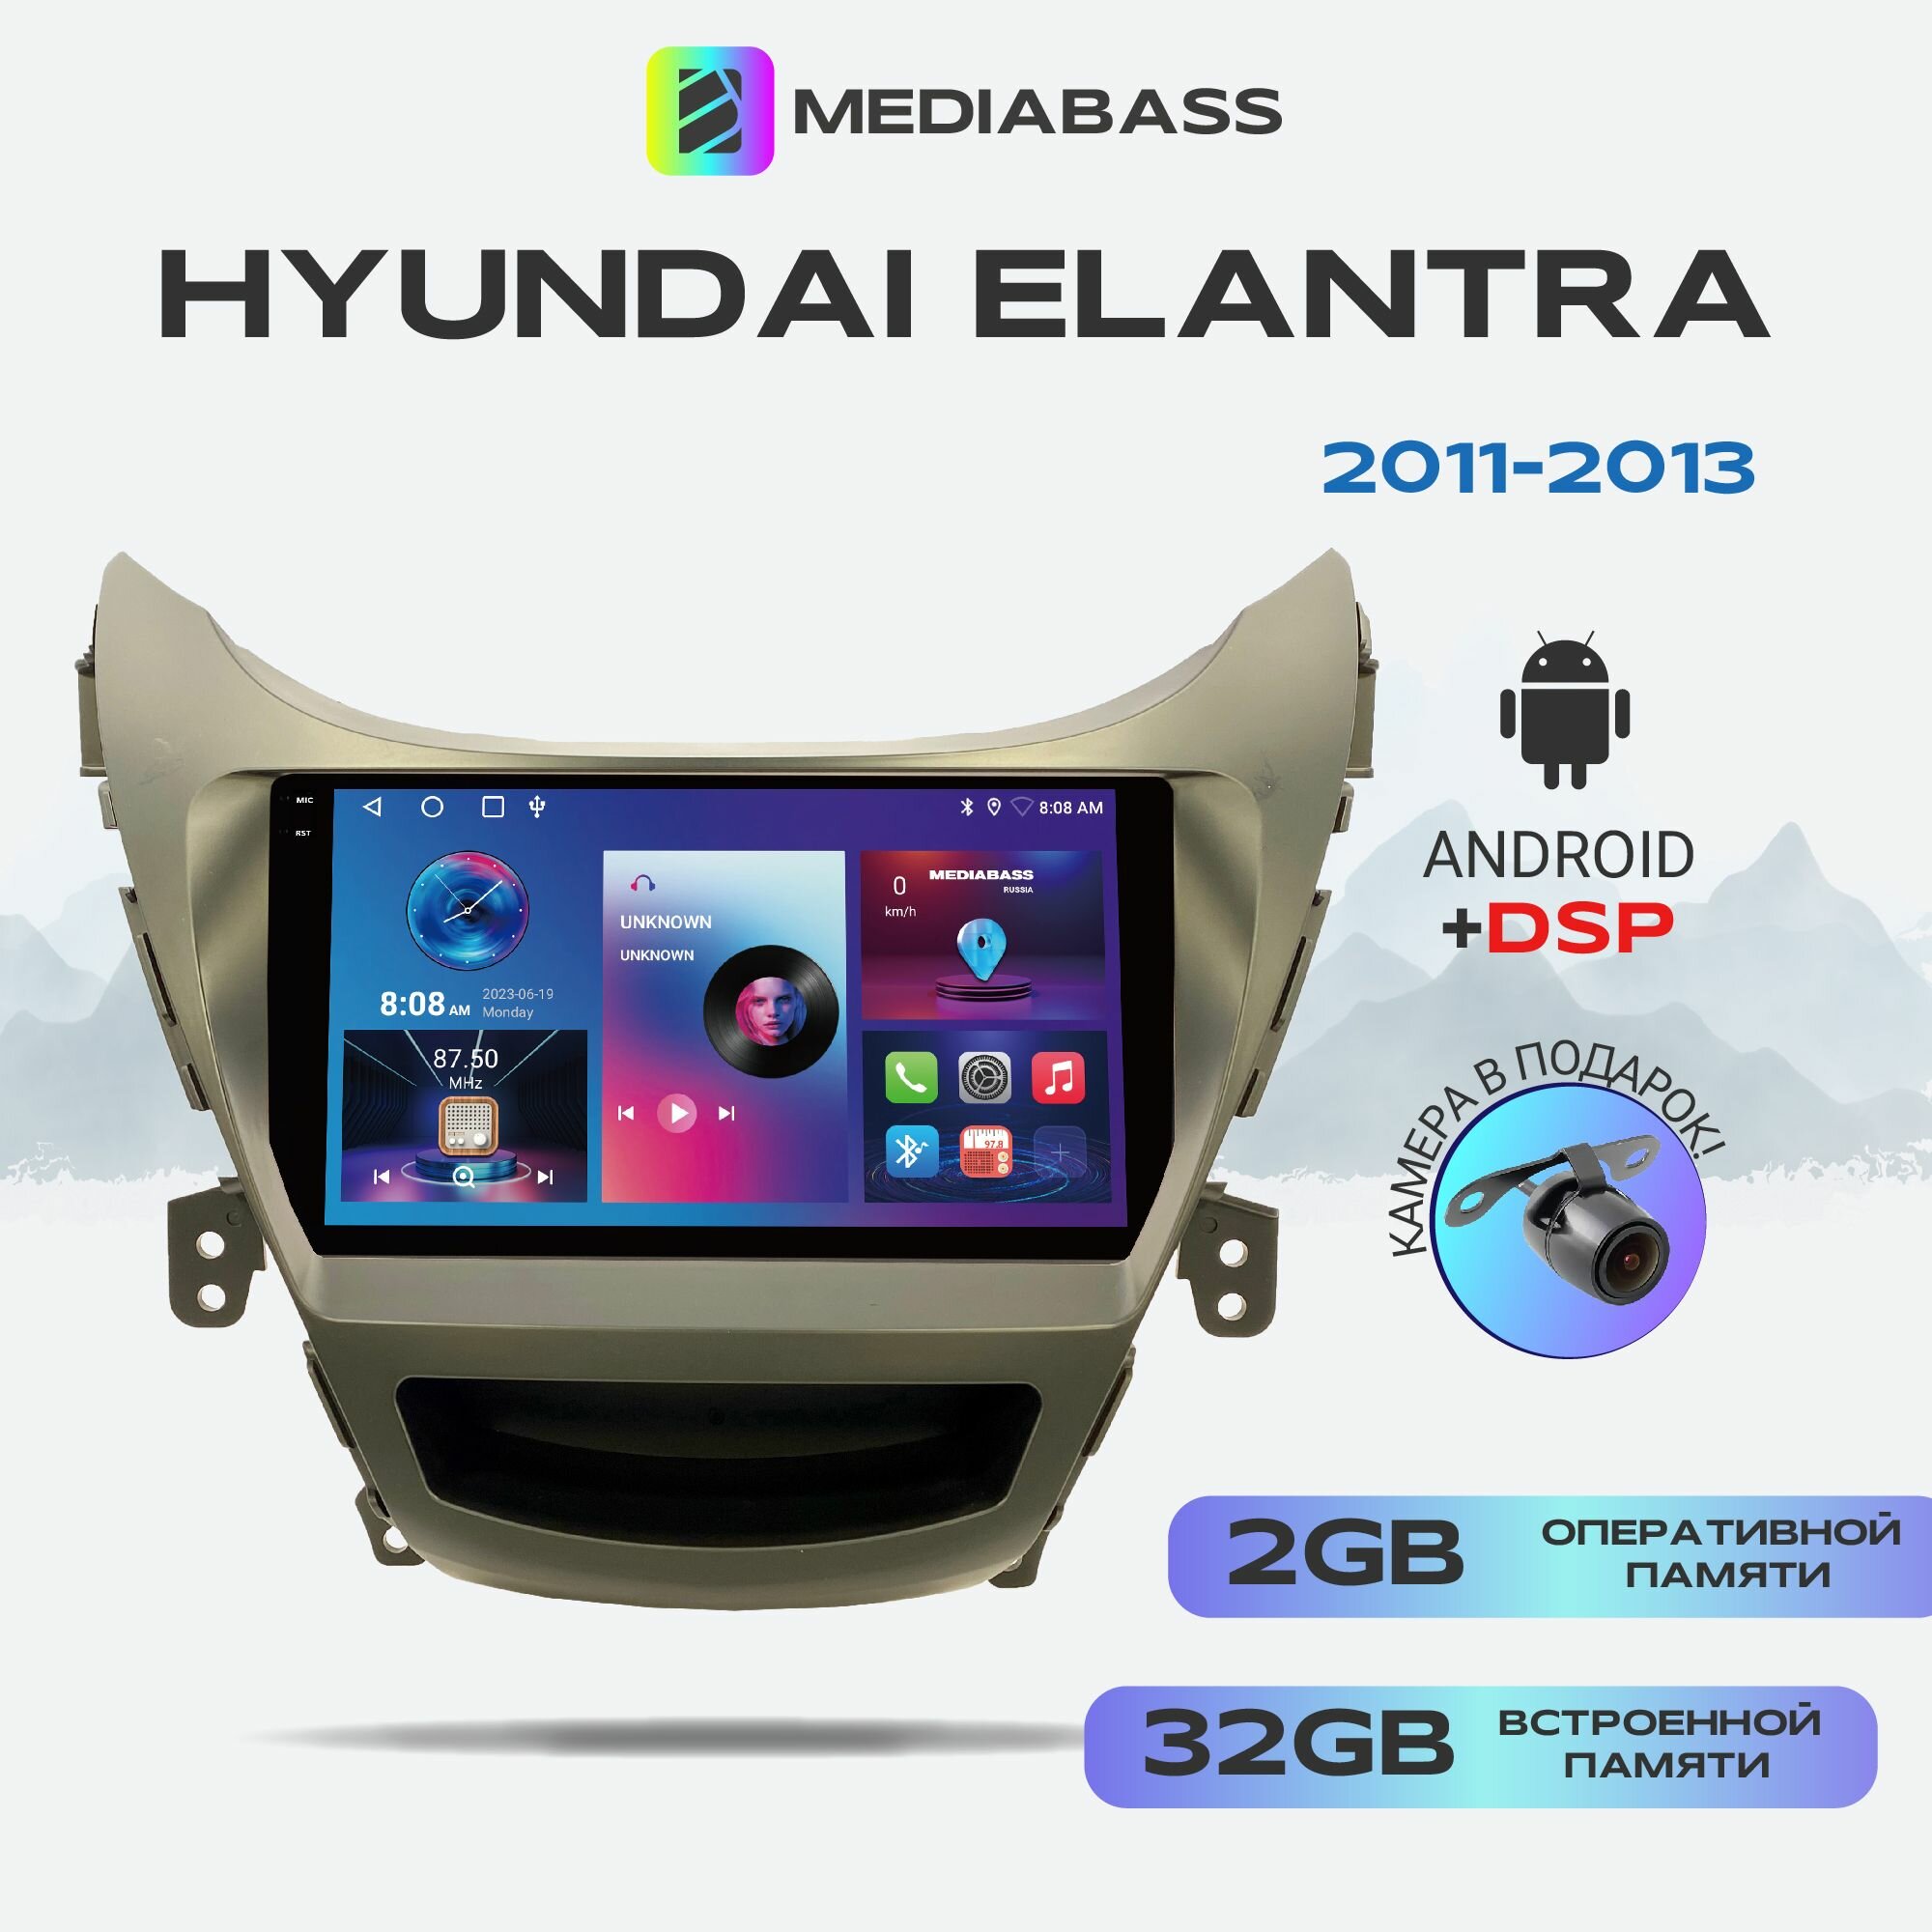 Автомагнитола Mediabass PRO Hyundai Elantra 2011-2013, Android 12, 2/32ГБ / Хендай Элентра, 4-ядерный процессор, QLED экран с разрешением 1280*720, DSP, чип-усилитель YD7388